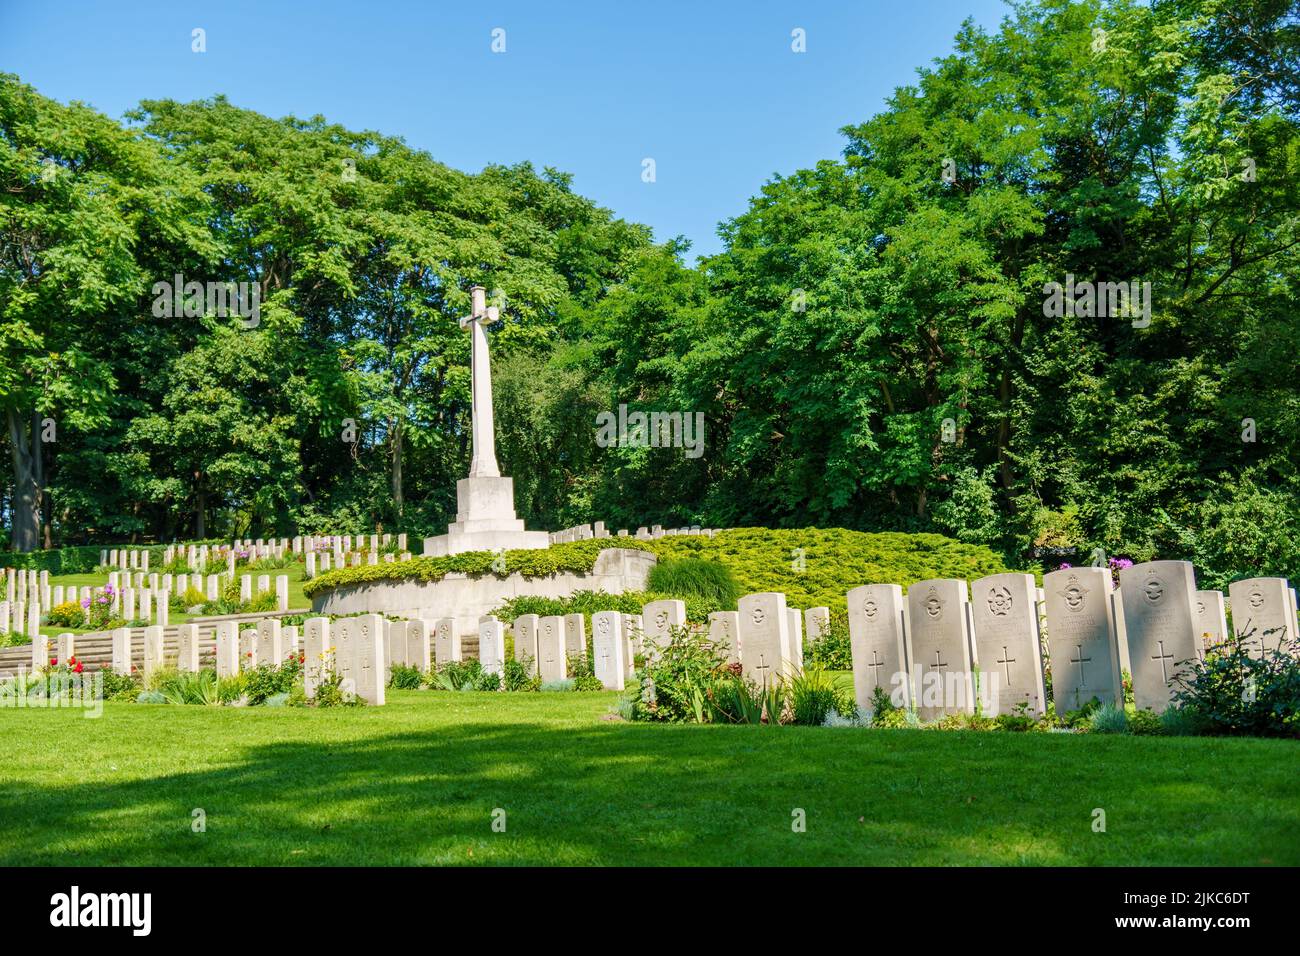 Les tombes des soldats américains de la deuxième guerre mondiale dans un cimetière du parc Cytadela Banque D'Images